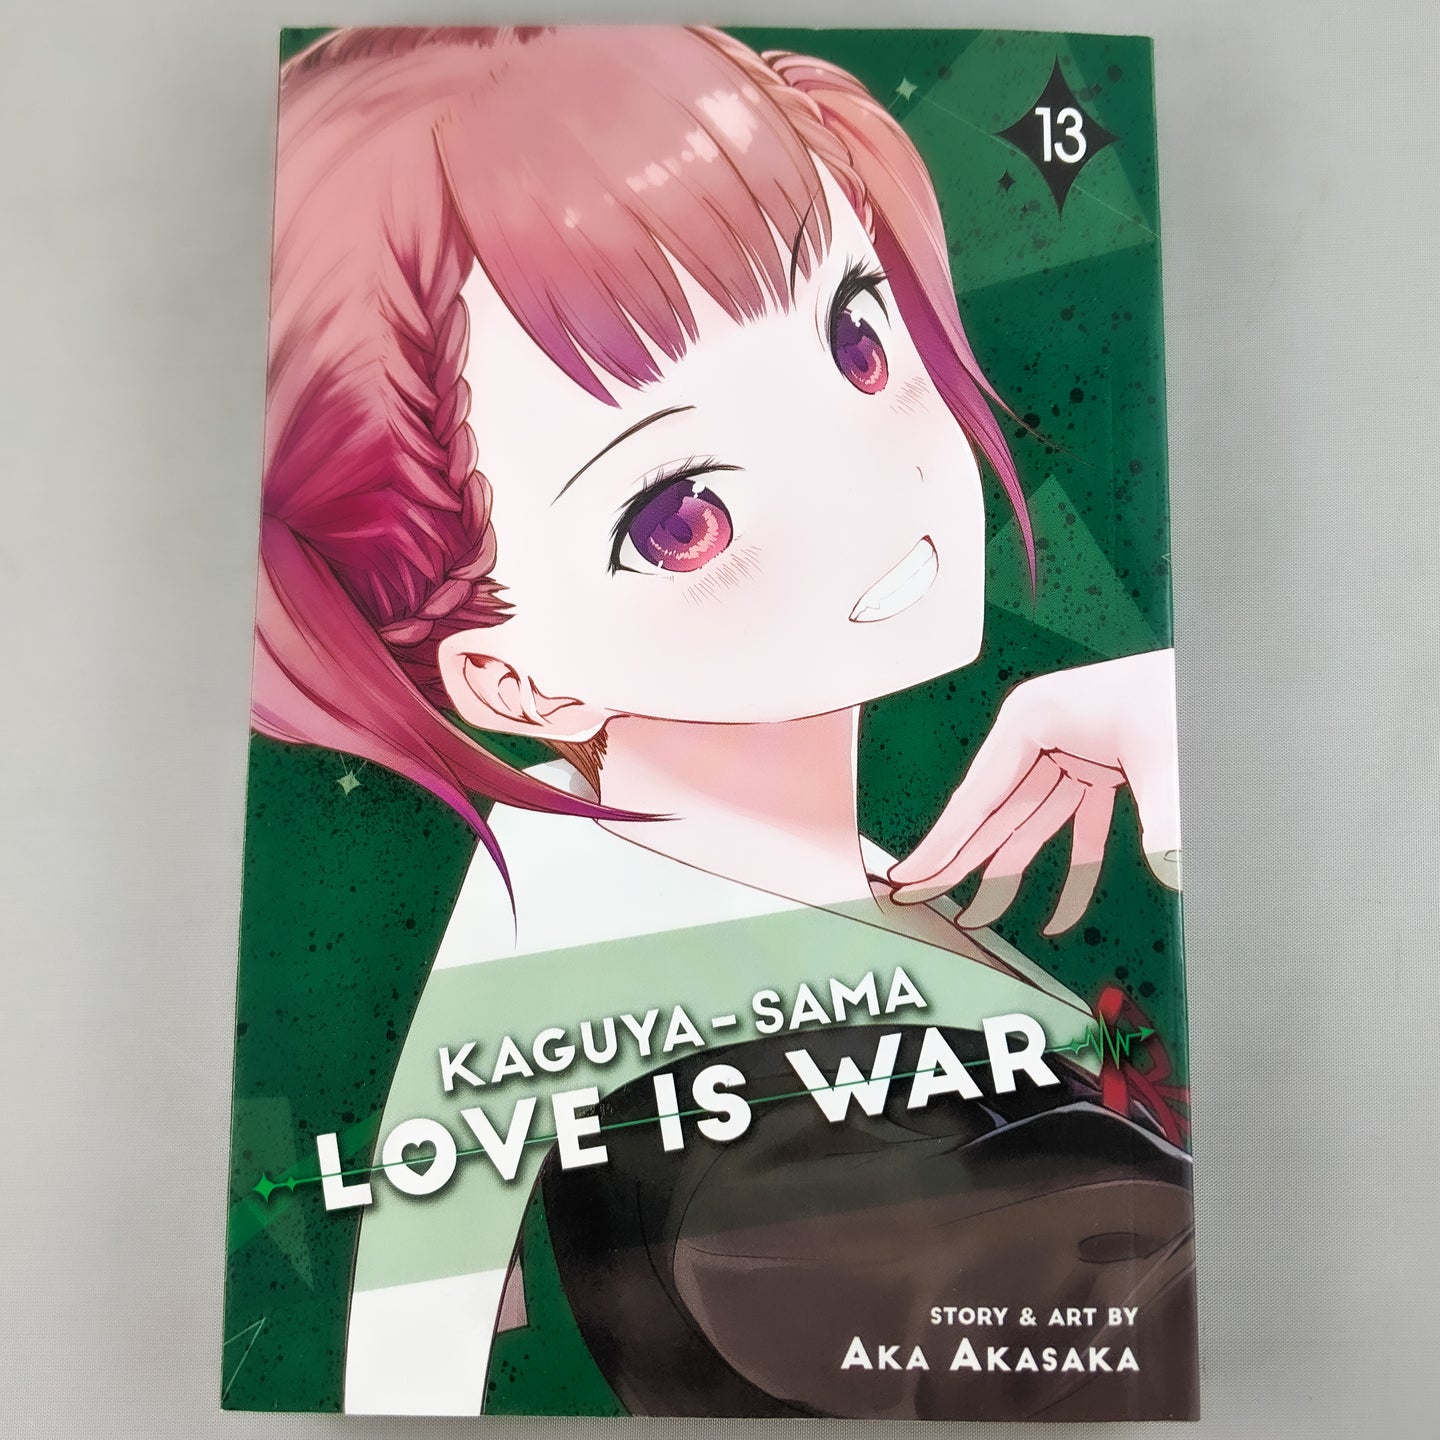 Kaguya-Sama Love Is War Volume 13. Manga by Aka Akasaka